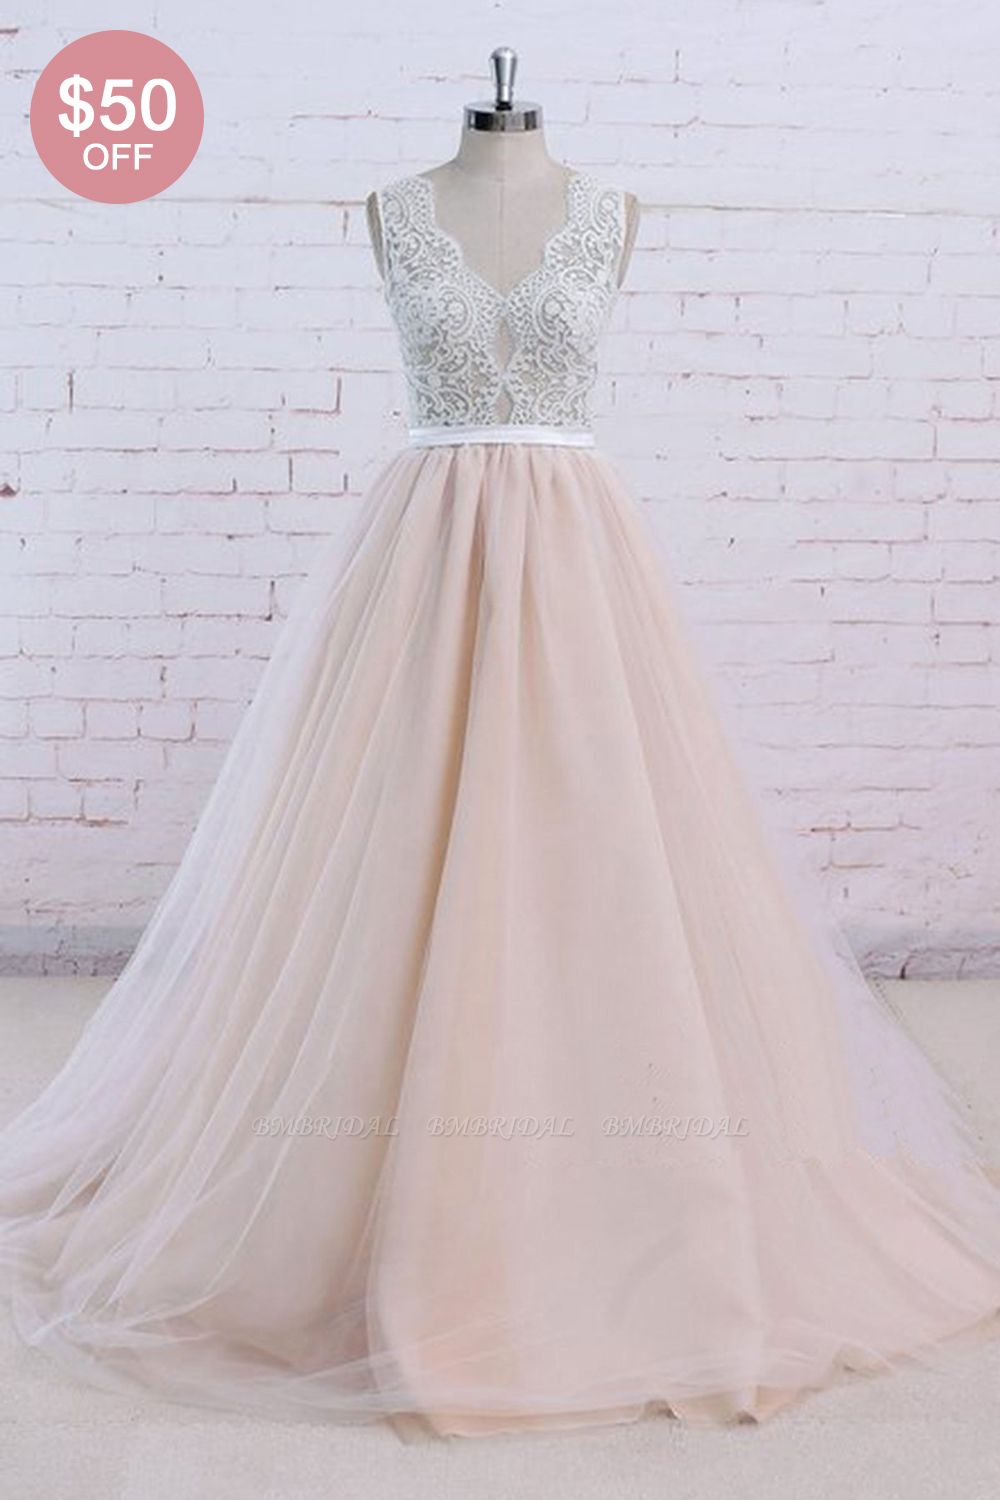 BMbridal AffordableBlush Pink Tulle Wedding Dress Ivory Lace V-Neck Vintage Bridal Gowns On Sale